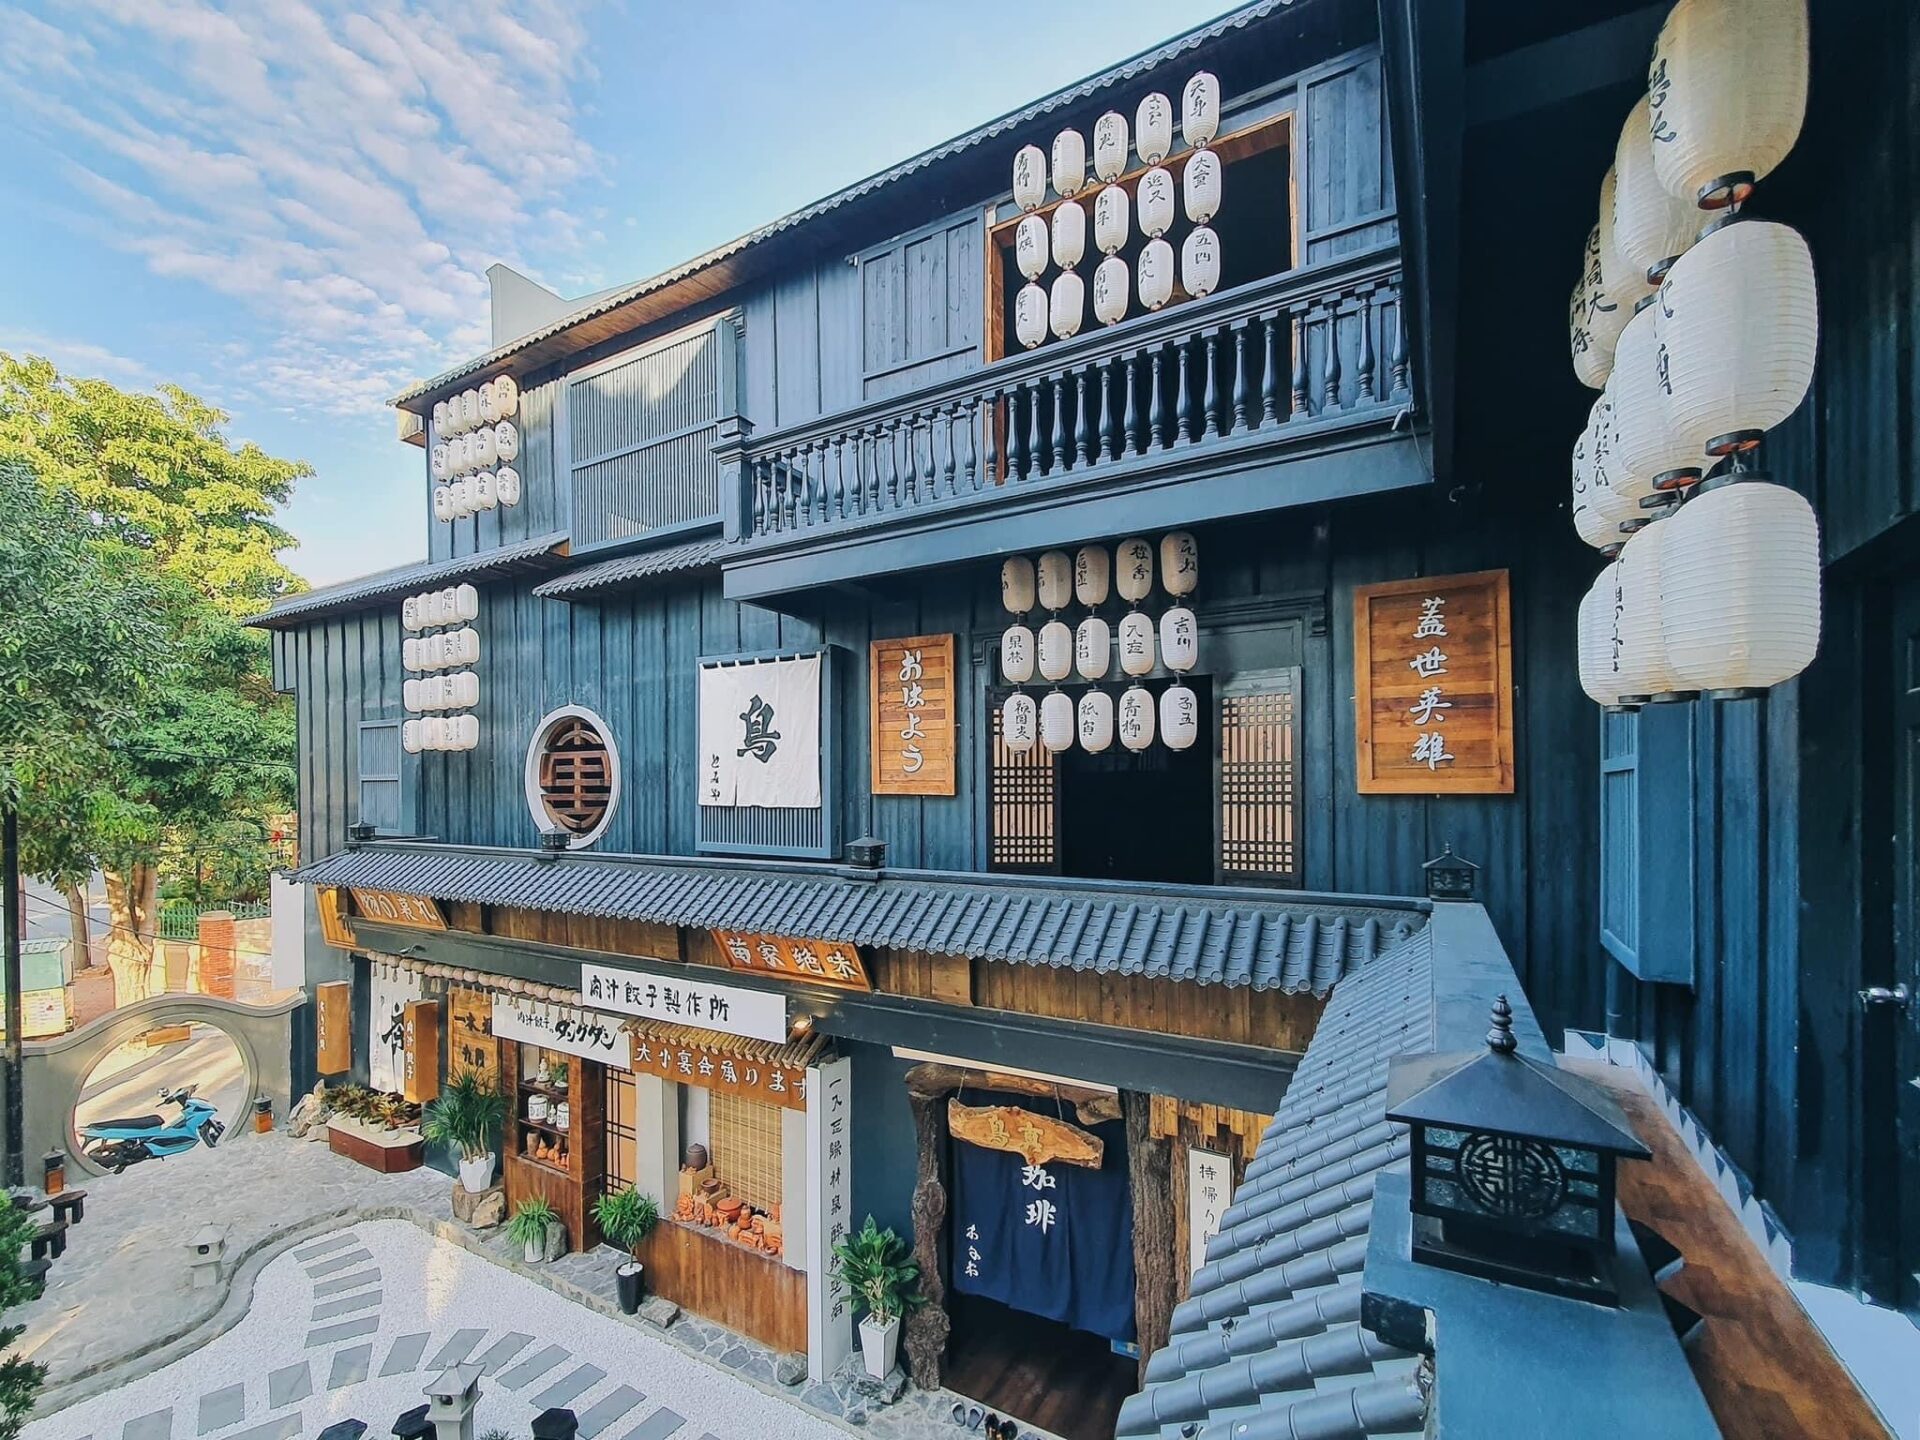 Studio Cafe phong cách Nhật Bản với ngói nhựa âm dương nổi bật